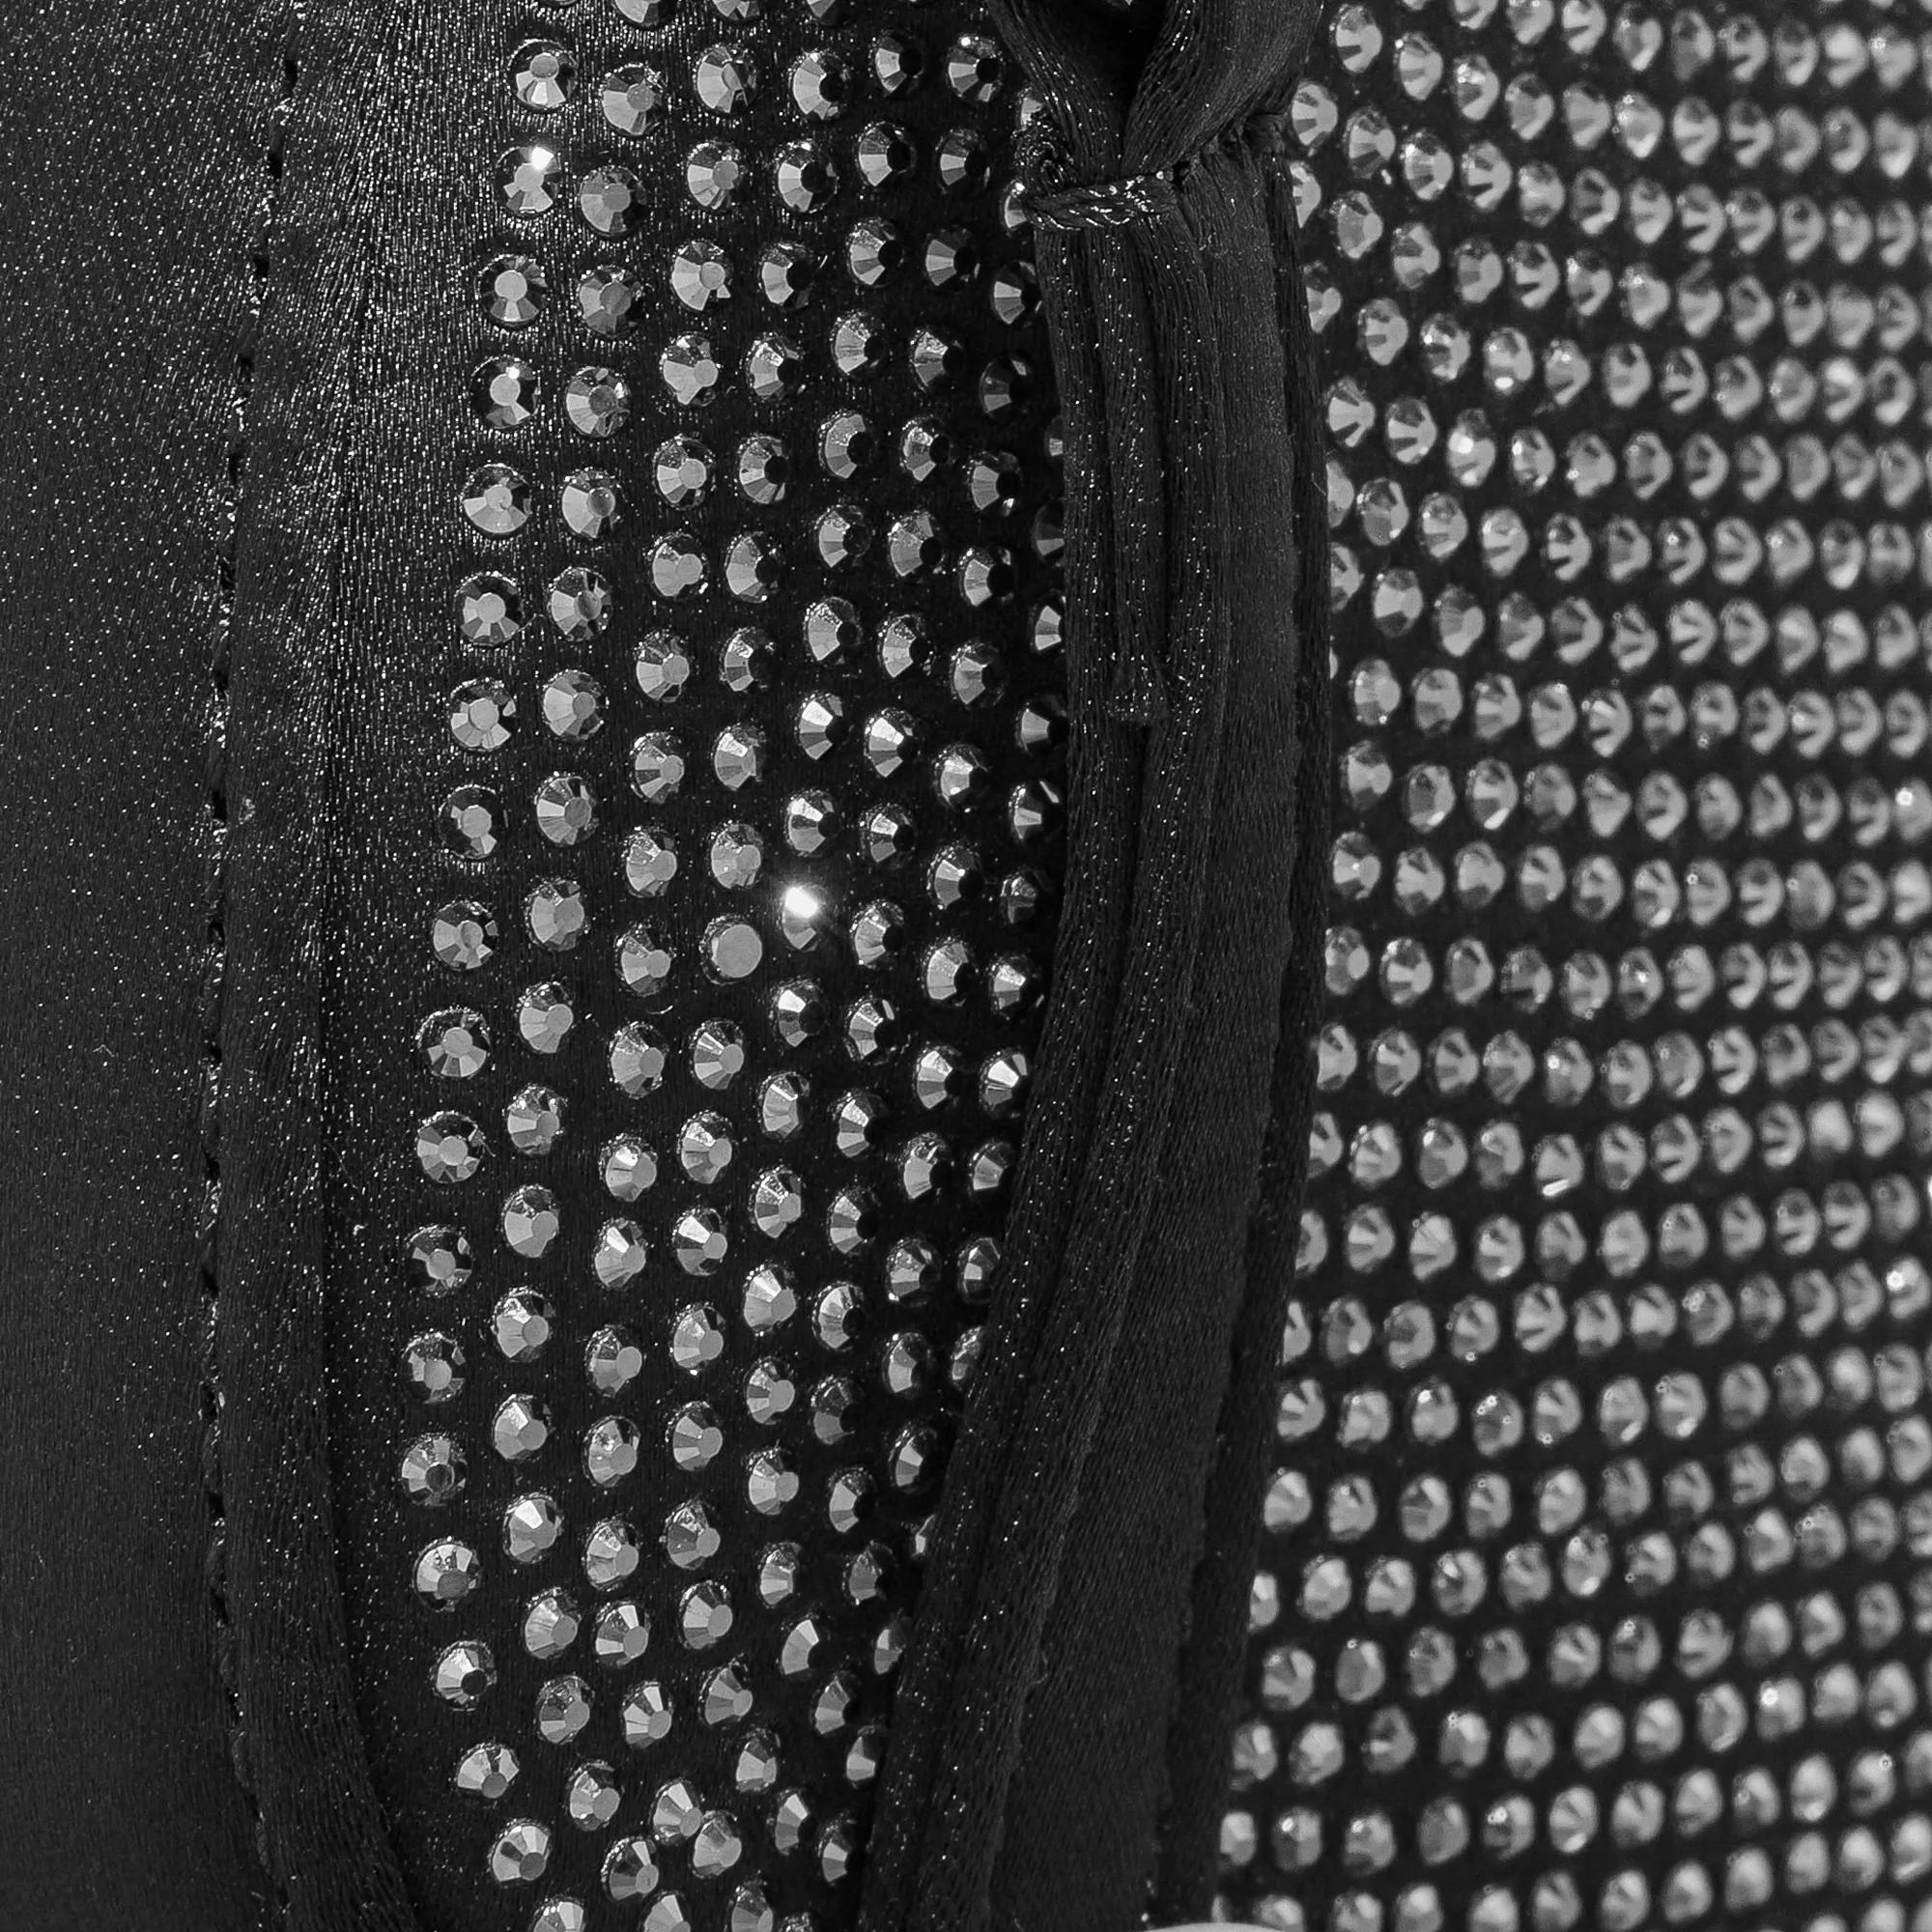 Emporio Armani Pochettes Minibag in zwart